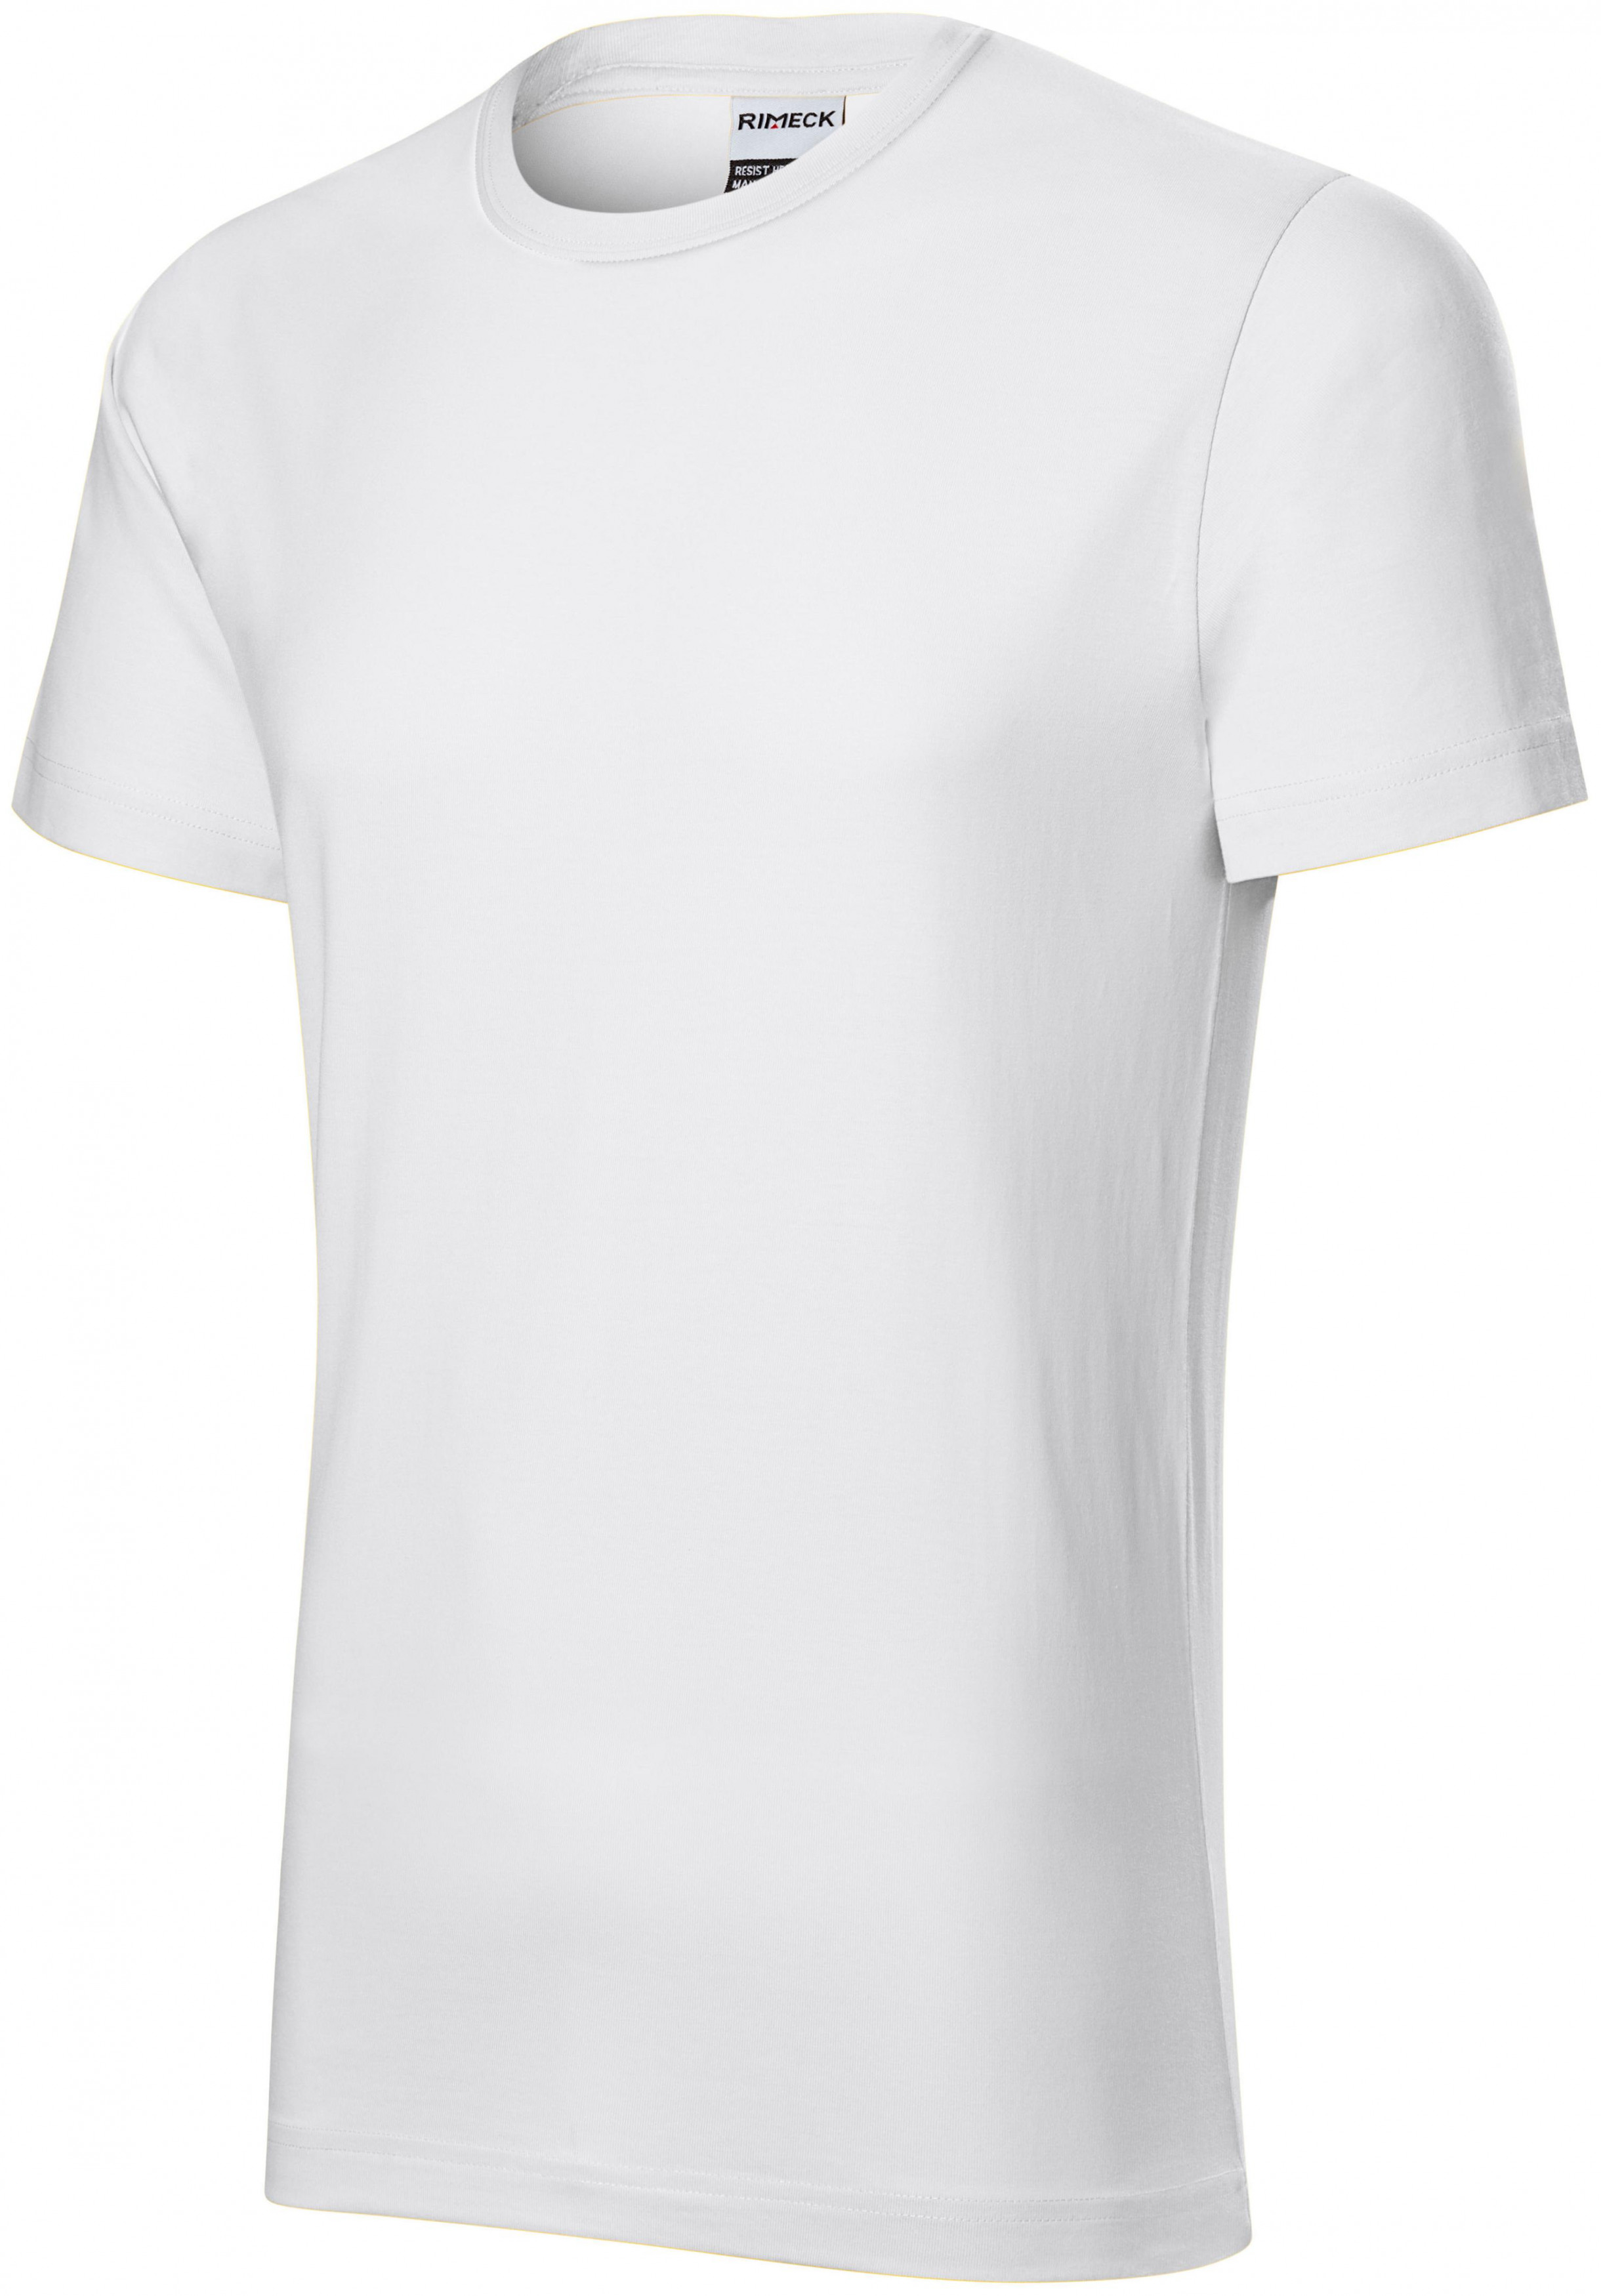 Odolné pánske tričko hrubšie, biela, XL